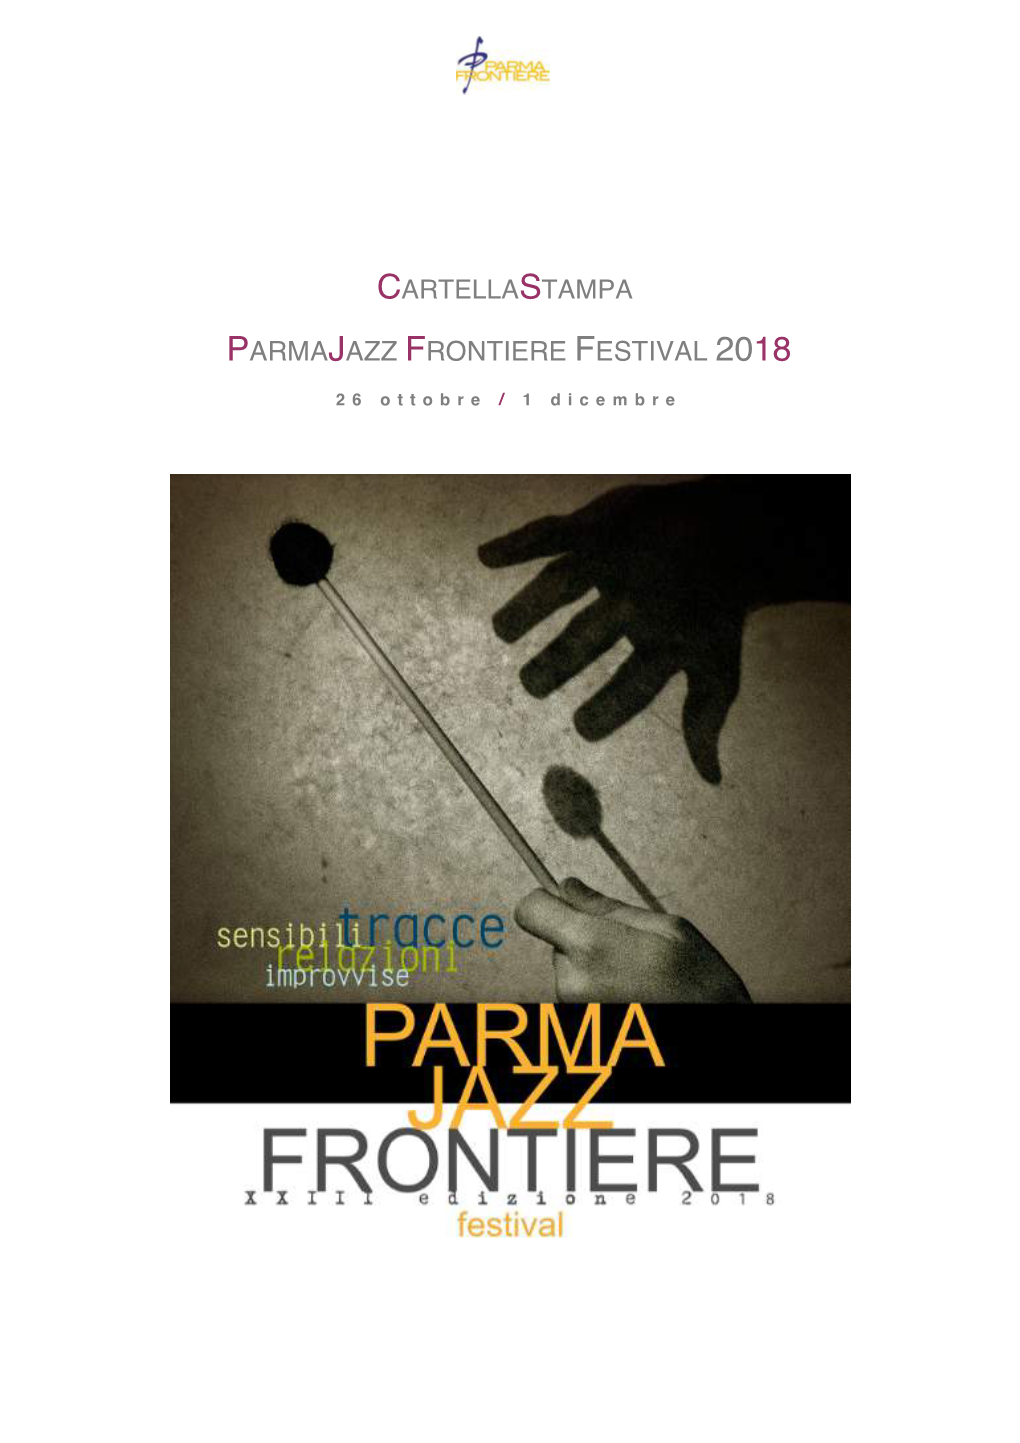 Cartellastampa Parmajazz Frontiere Festival 2018